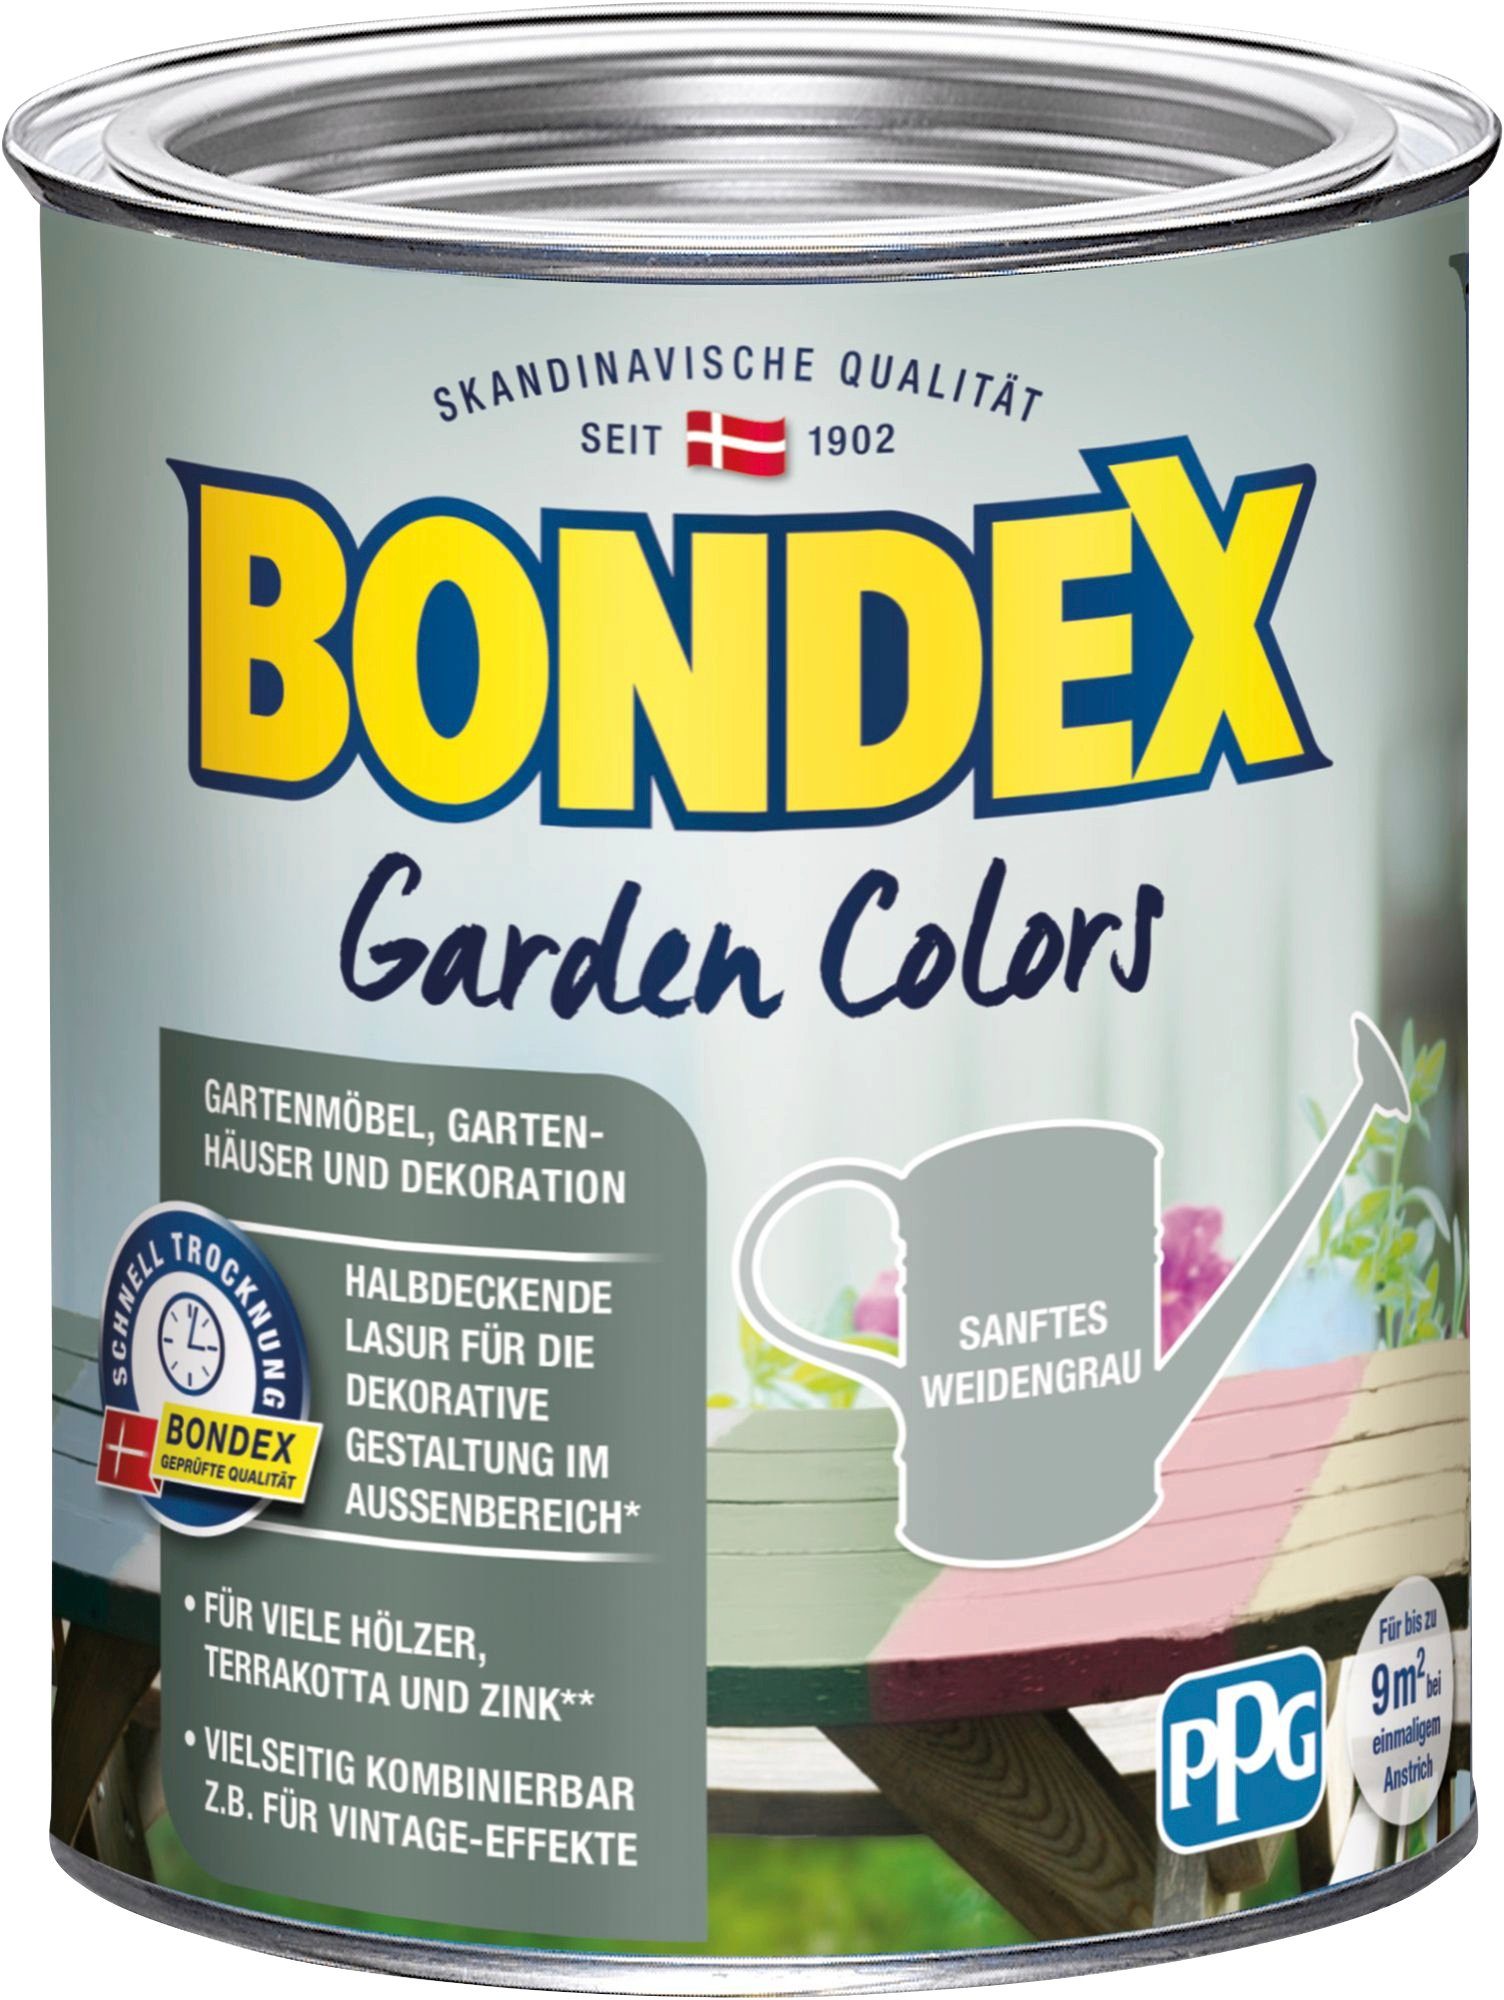 0,75 Inhalt COLORS, Weidengrau Liter Wetterschutzfarbe Behagliches Bondex Grün, Sanftes GARDEN